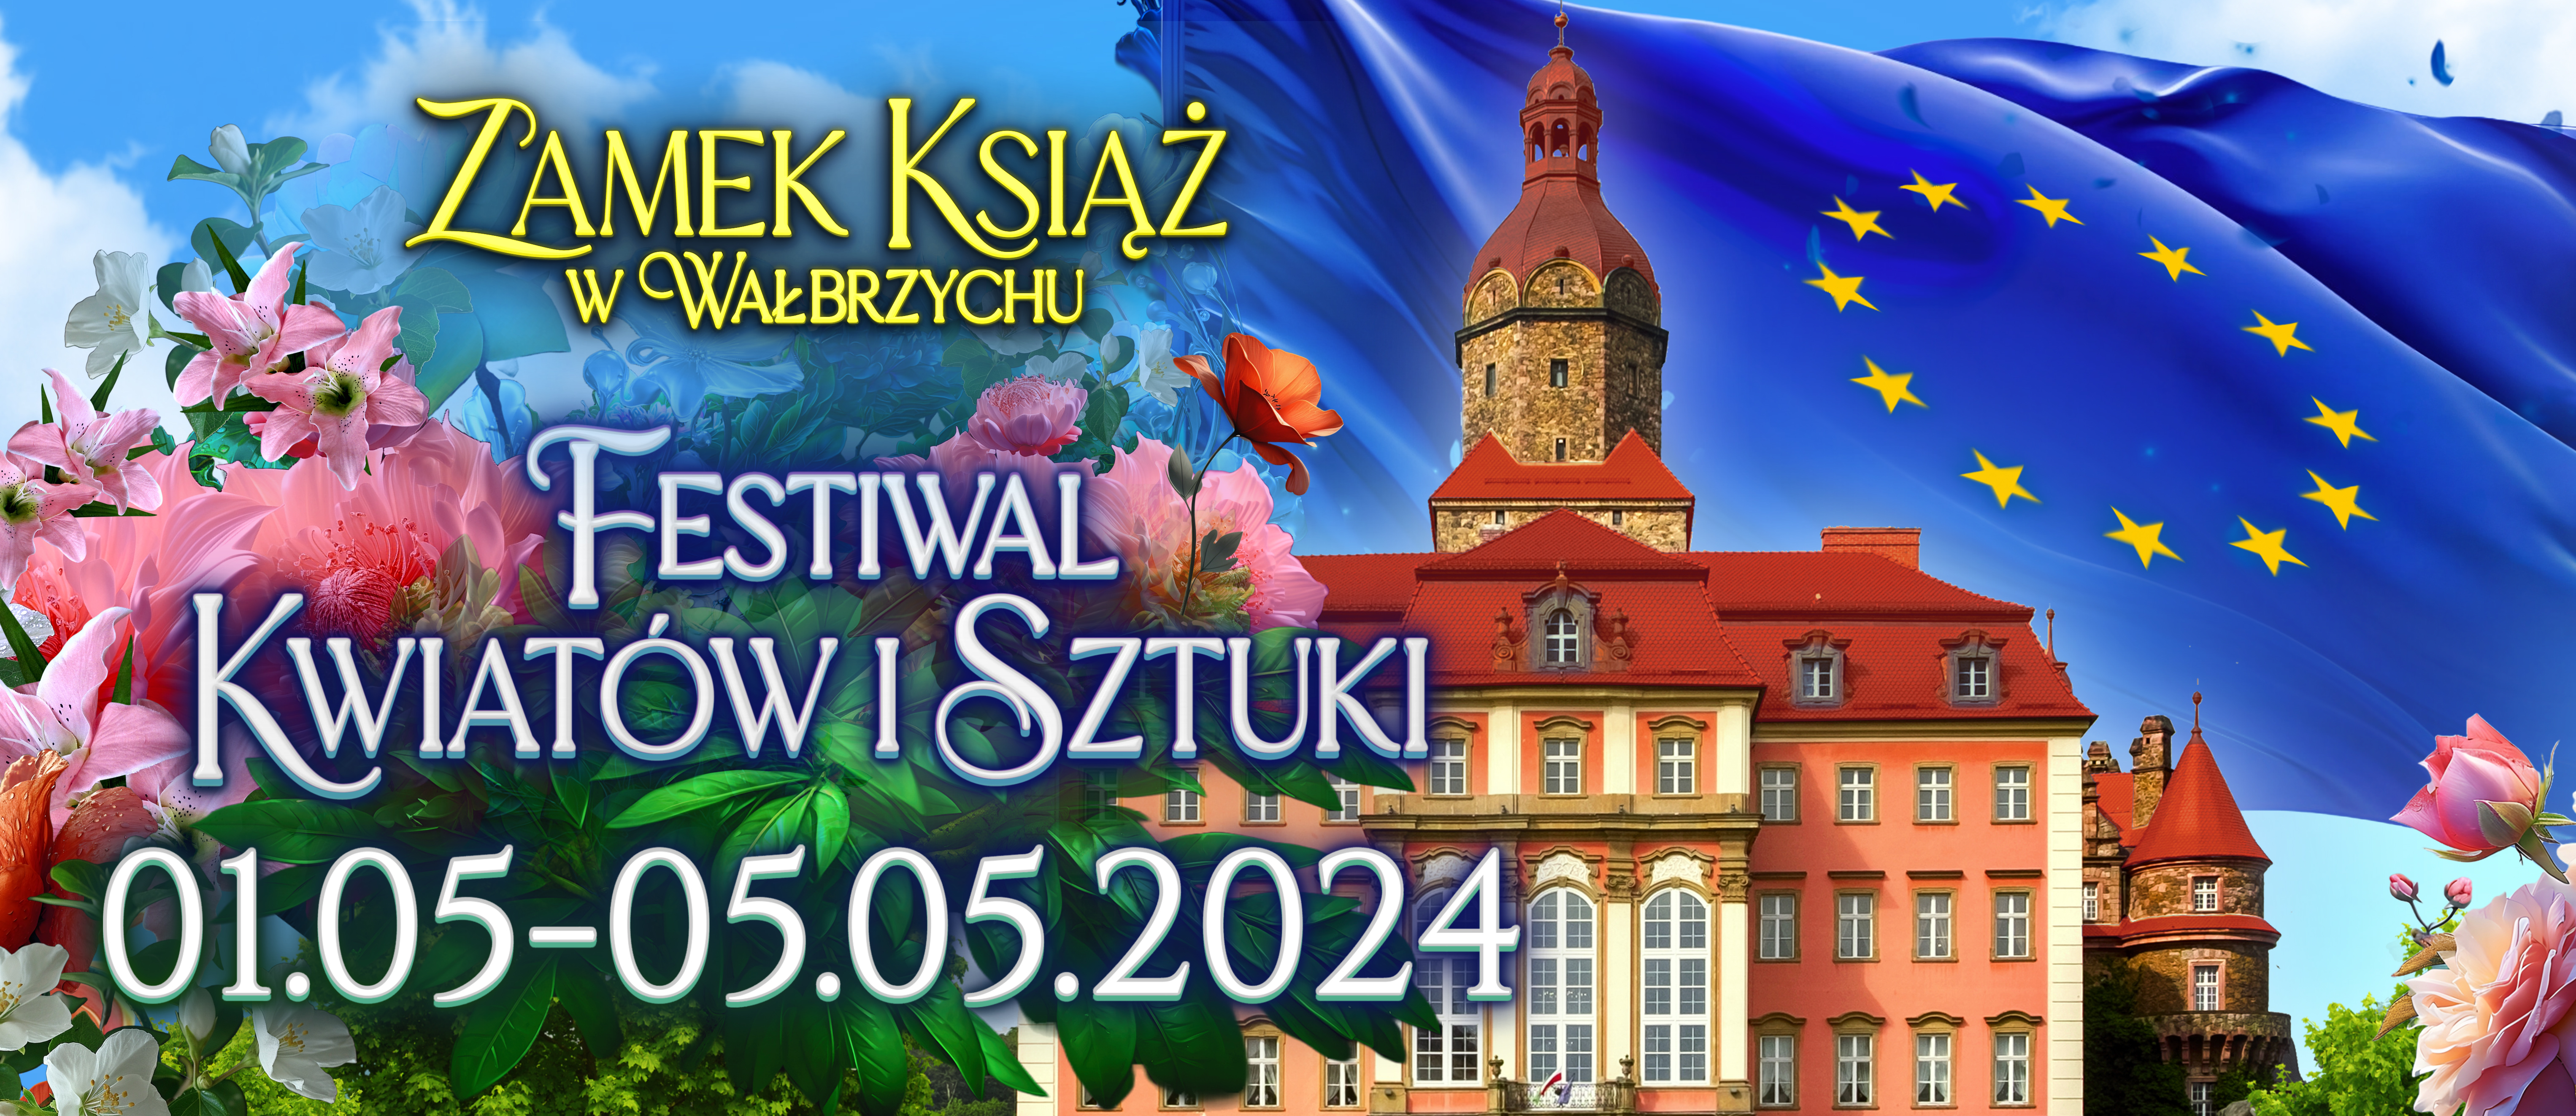 Festiwal Kwiatów i Sztuki 2024 - ruszyła sprzedaż biletów